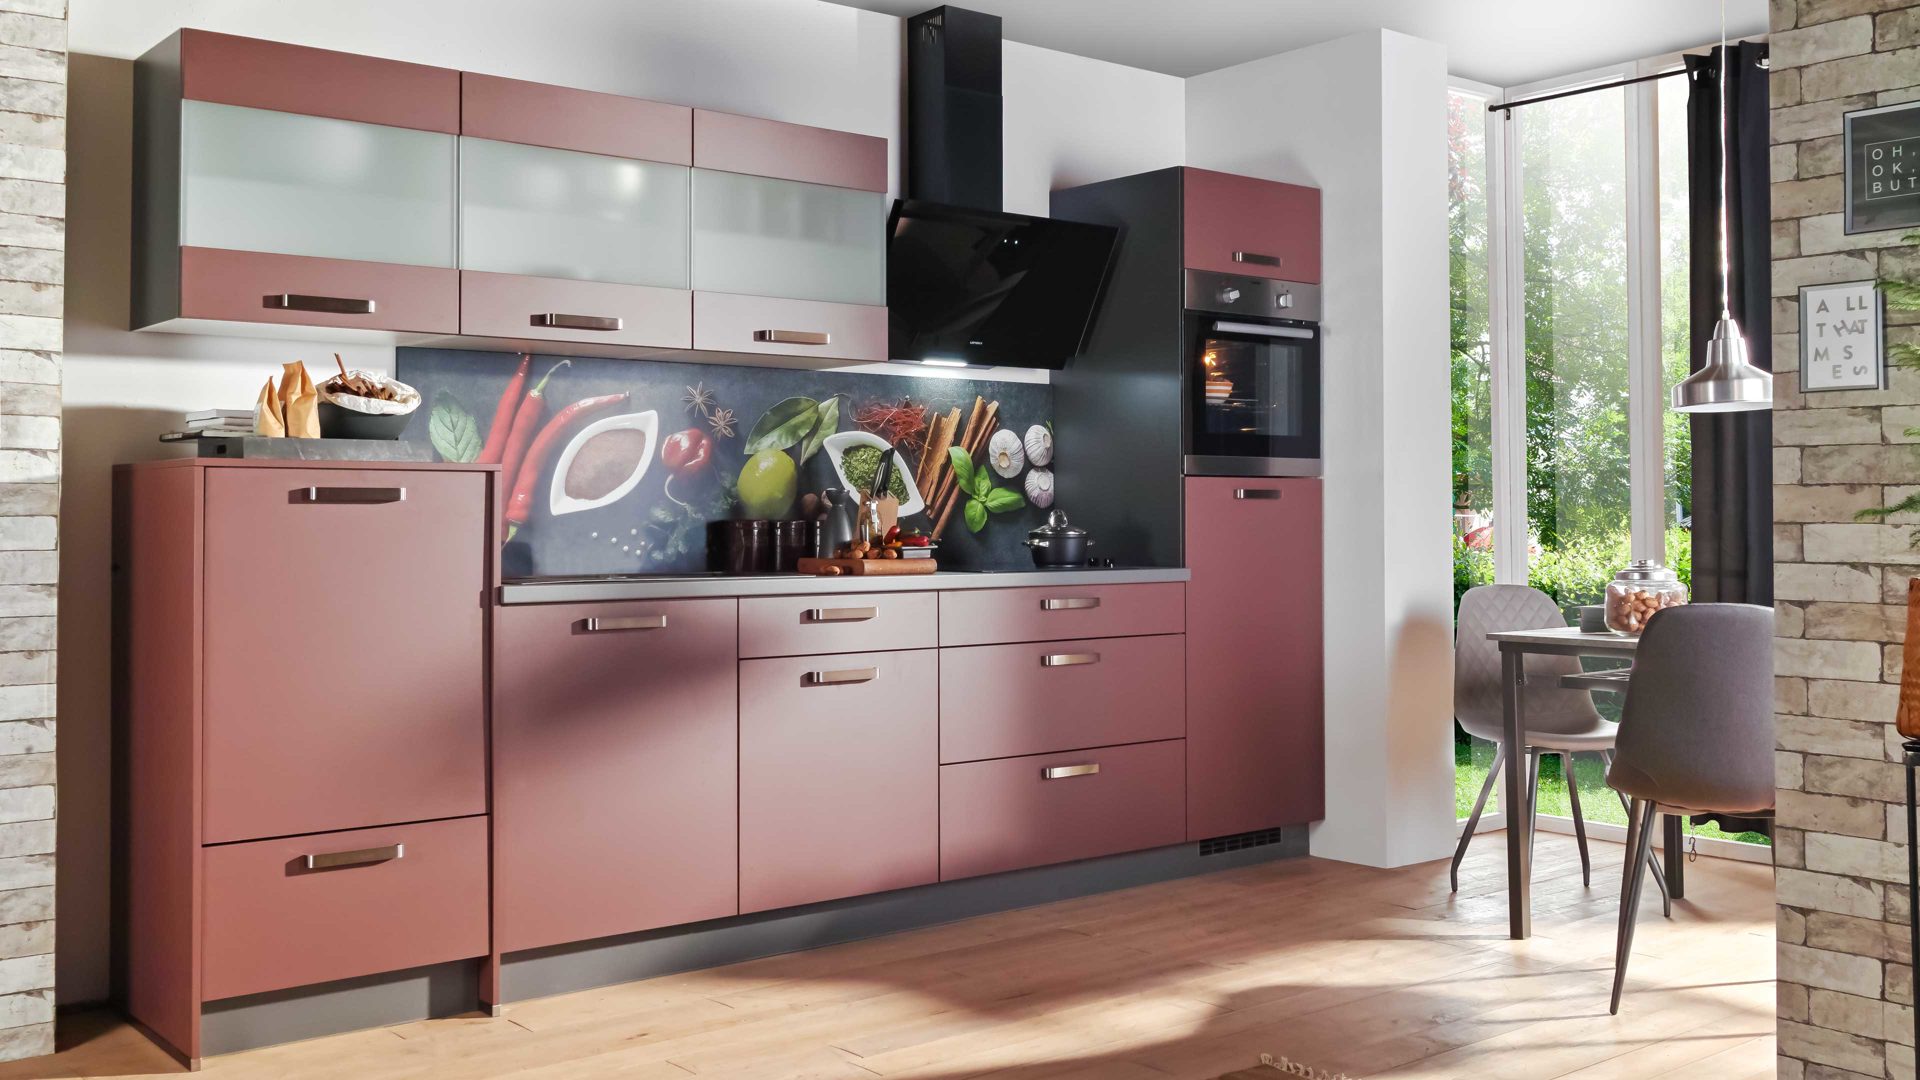 Einbauküche Express küchen aus Holz in Rot EXPRESS KÜCHEN Einbauküche Win mit Geräten Karminrot & Anthrazit - Länge ca. 333 cm